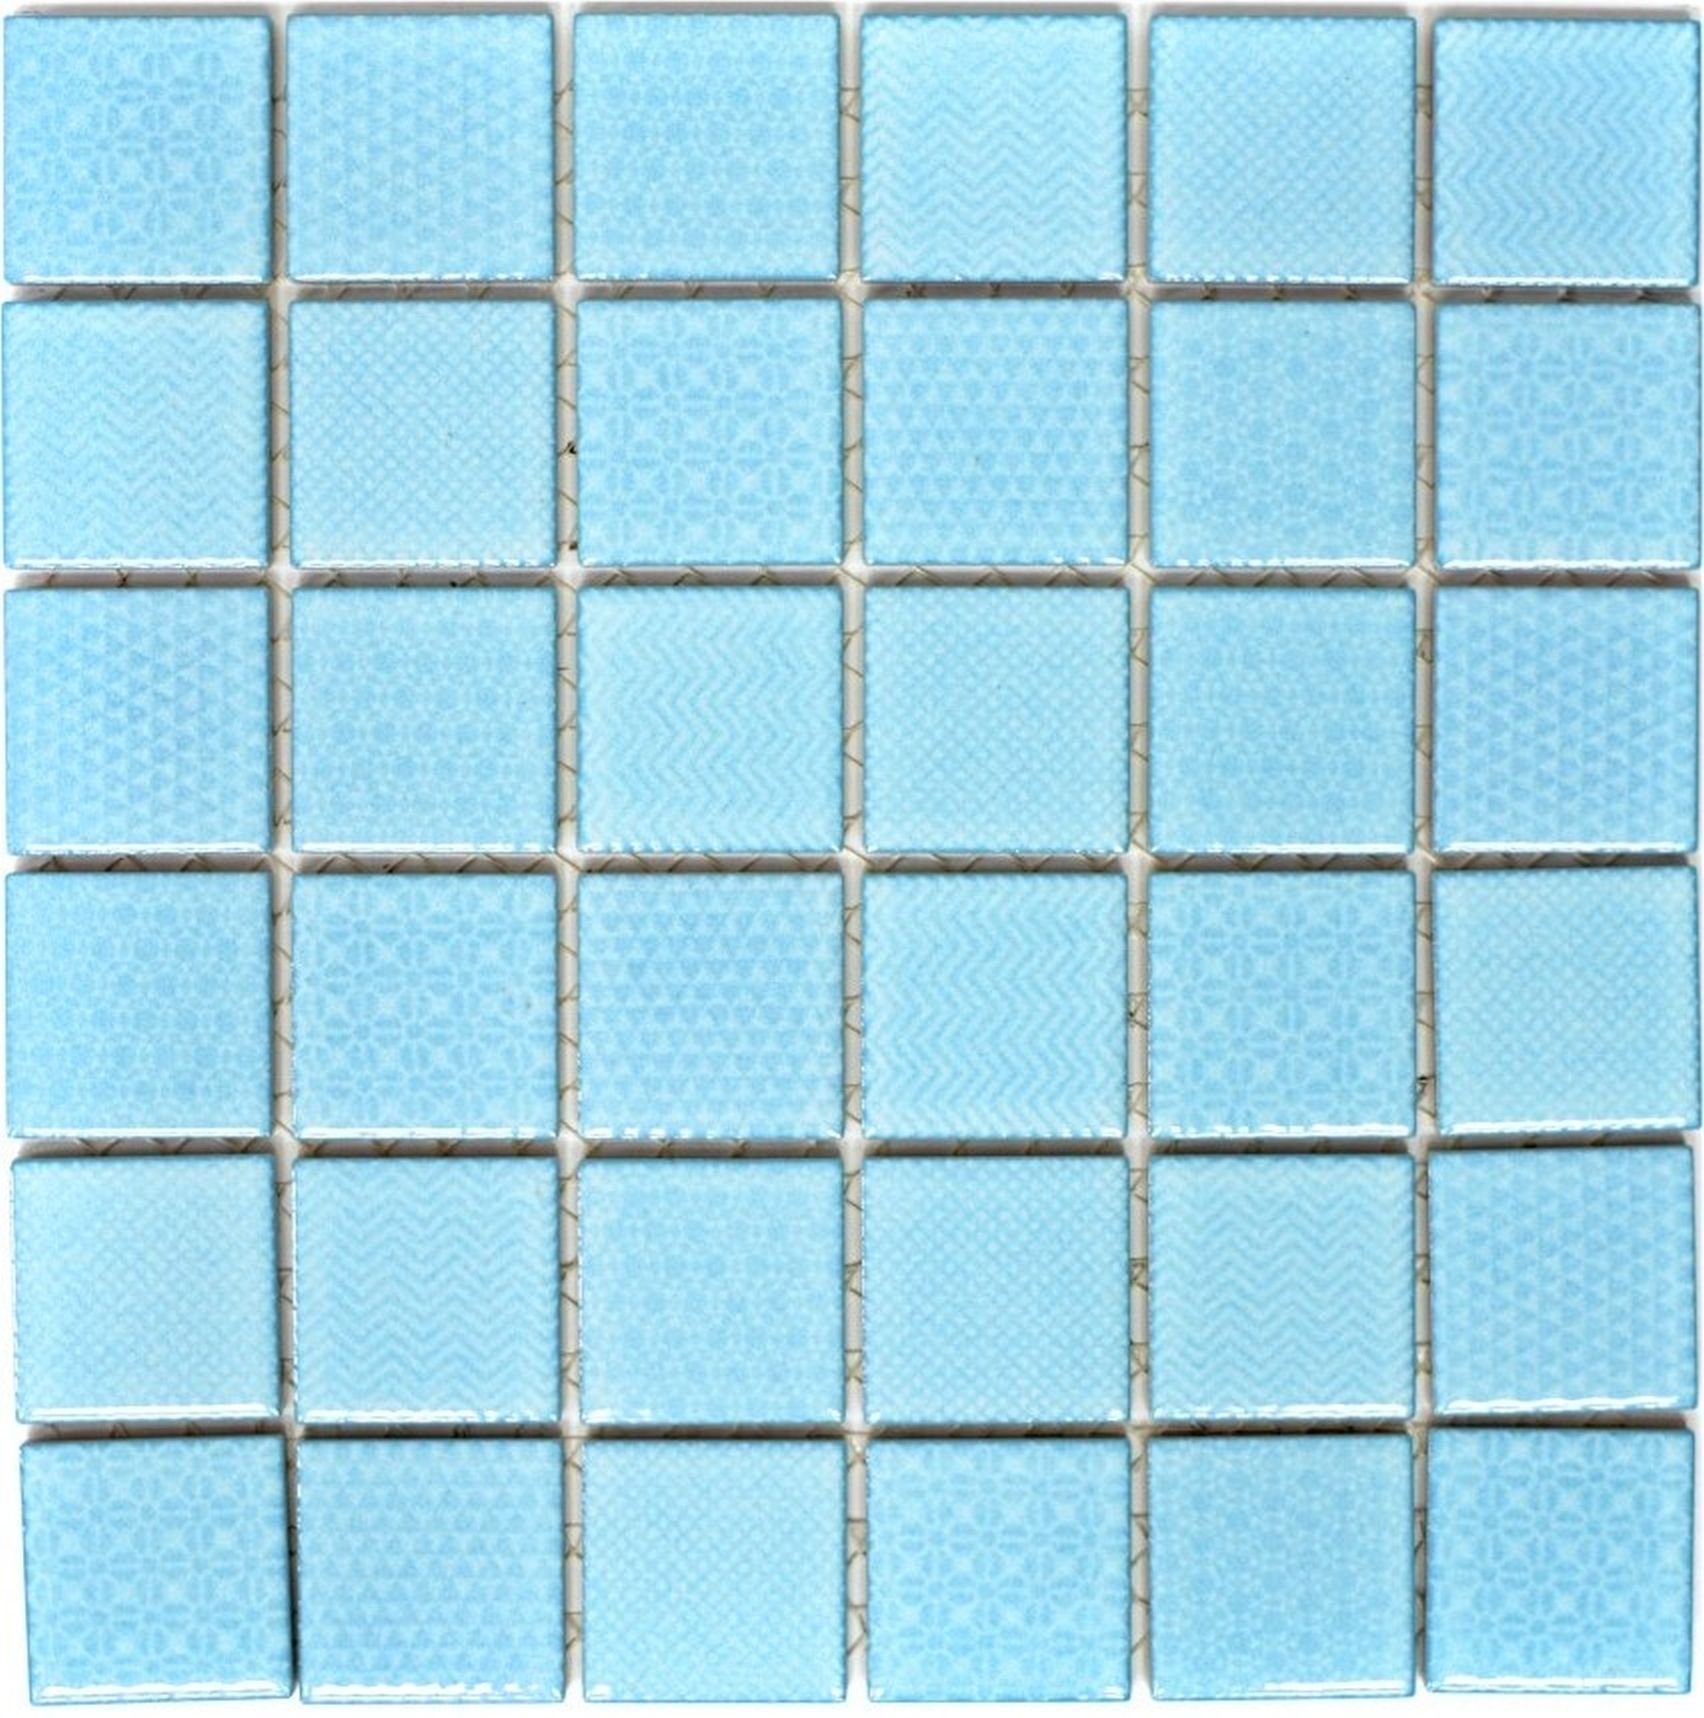 Mosani Mosaikfliesen Keramik Mosaik hellblau Küche BAD eisblau Pool Fliese Fliesenspiegel